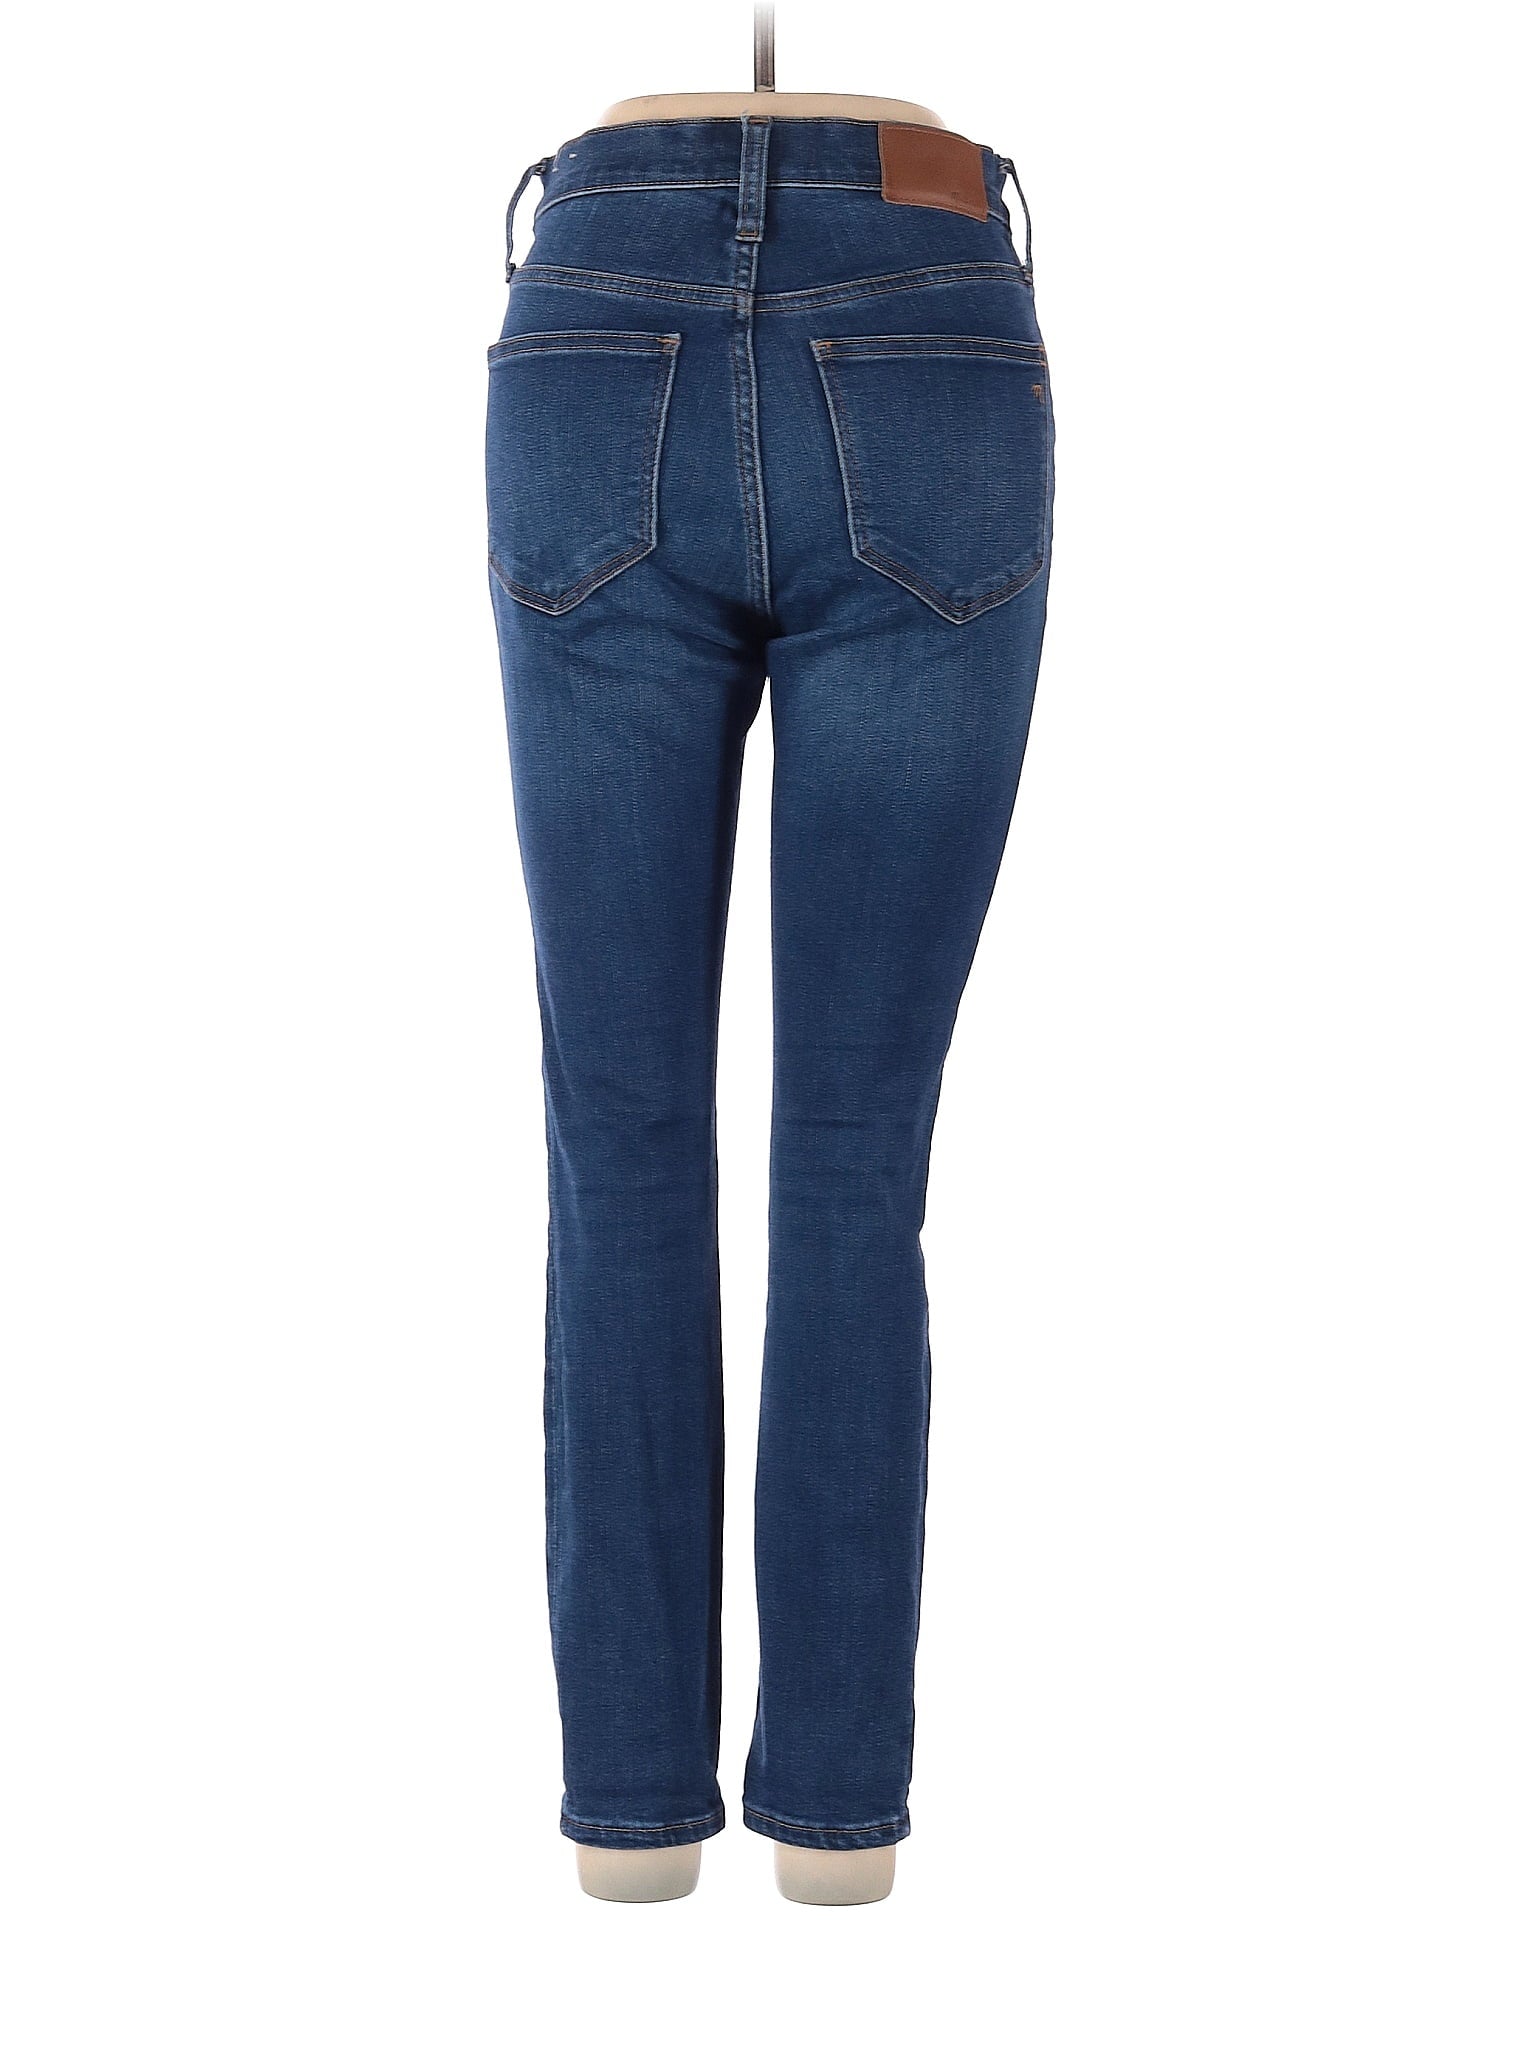 Mid-Rise Boyjeans Petite Roadtripper Jeans In Jansen Wash in Dark Wash waist size - 25 P